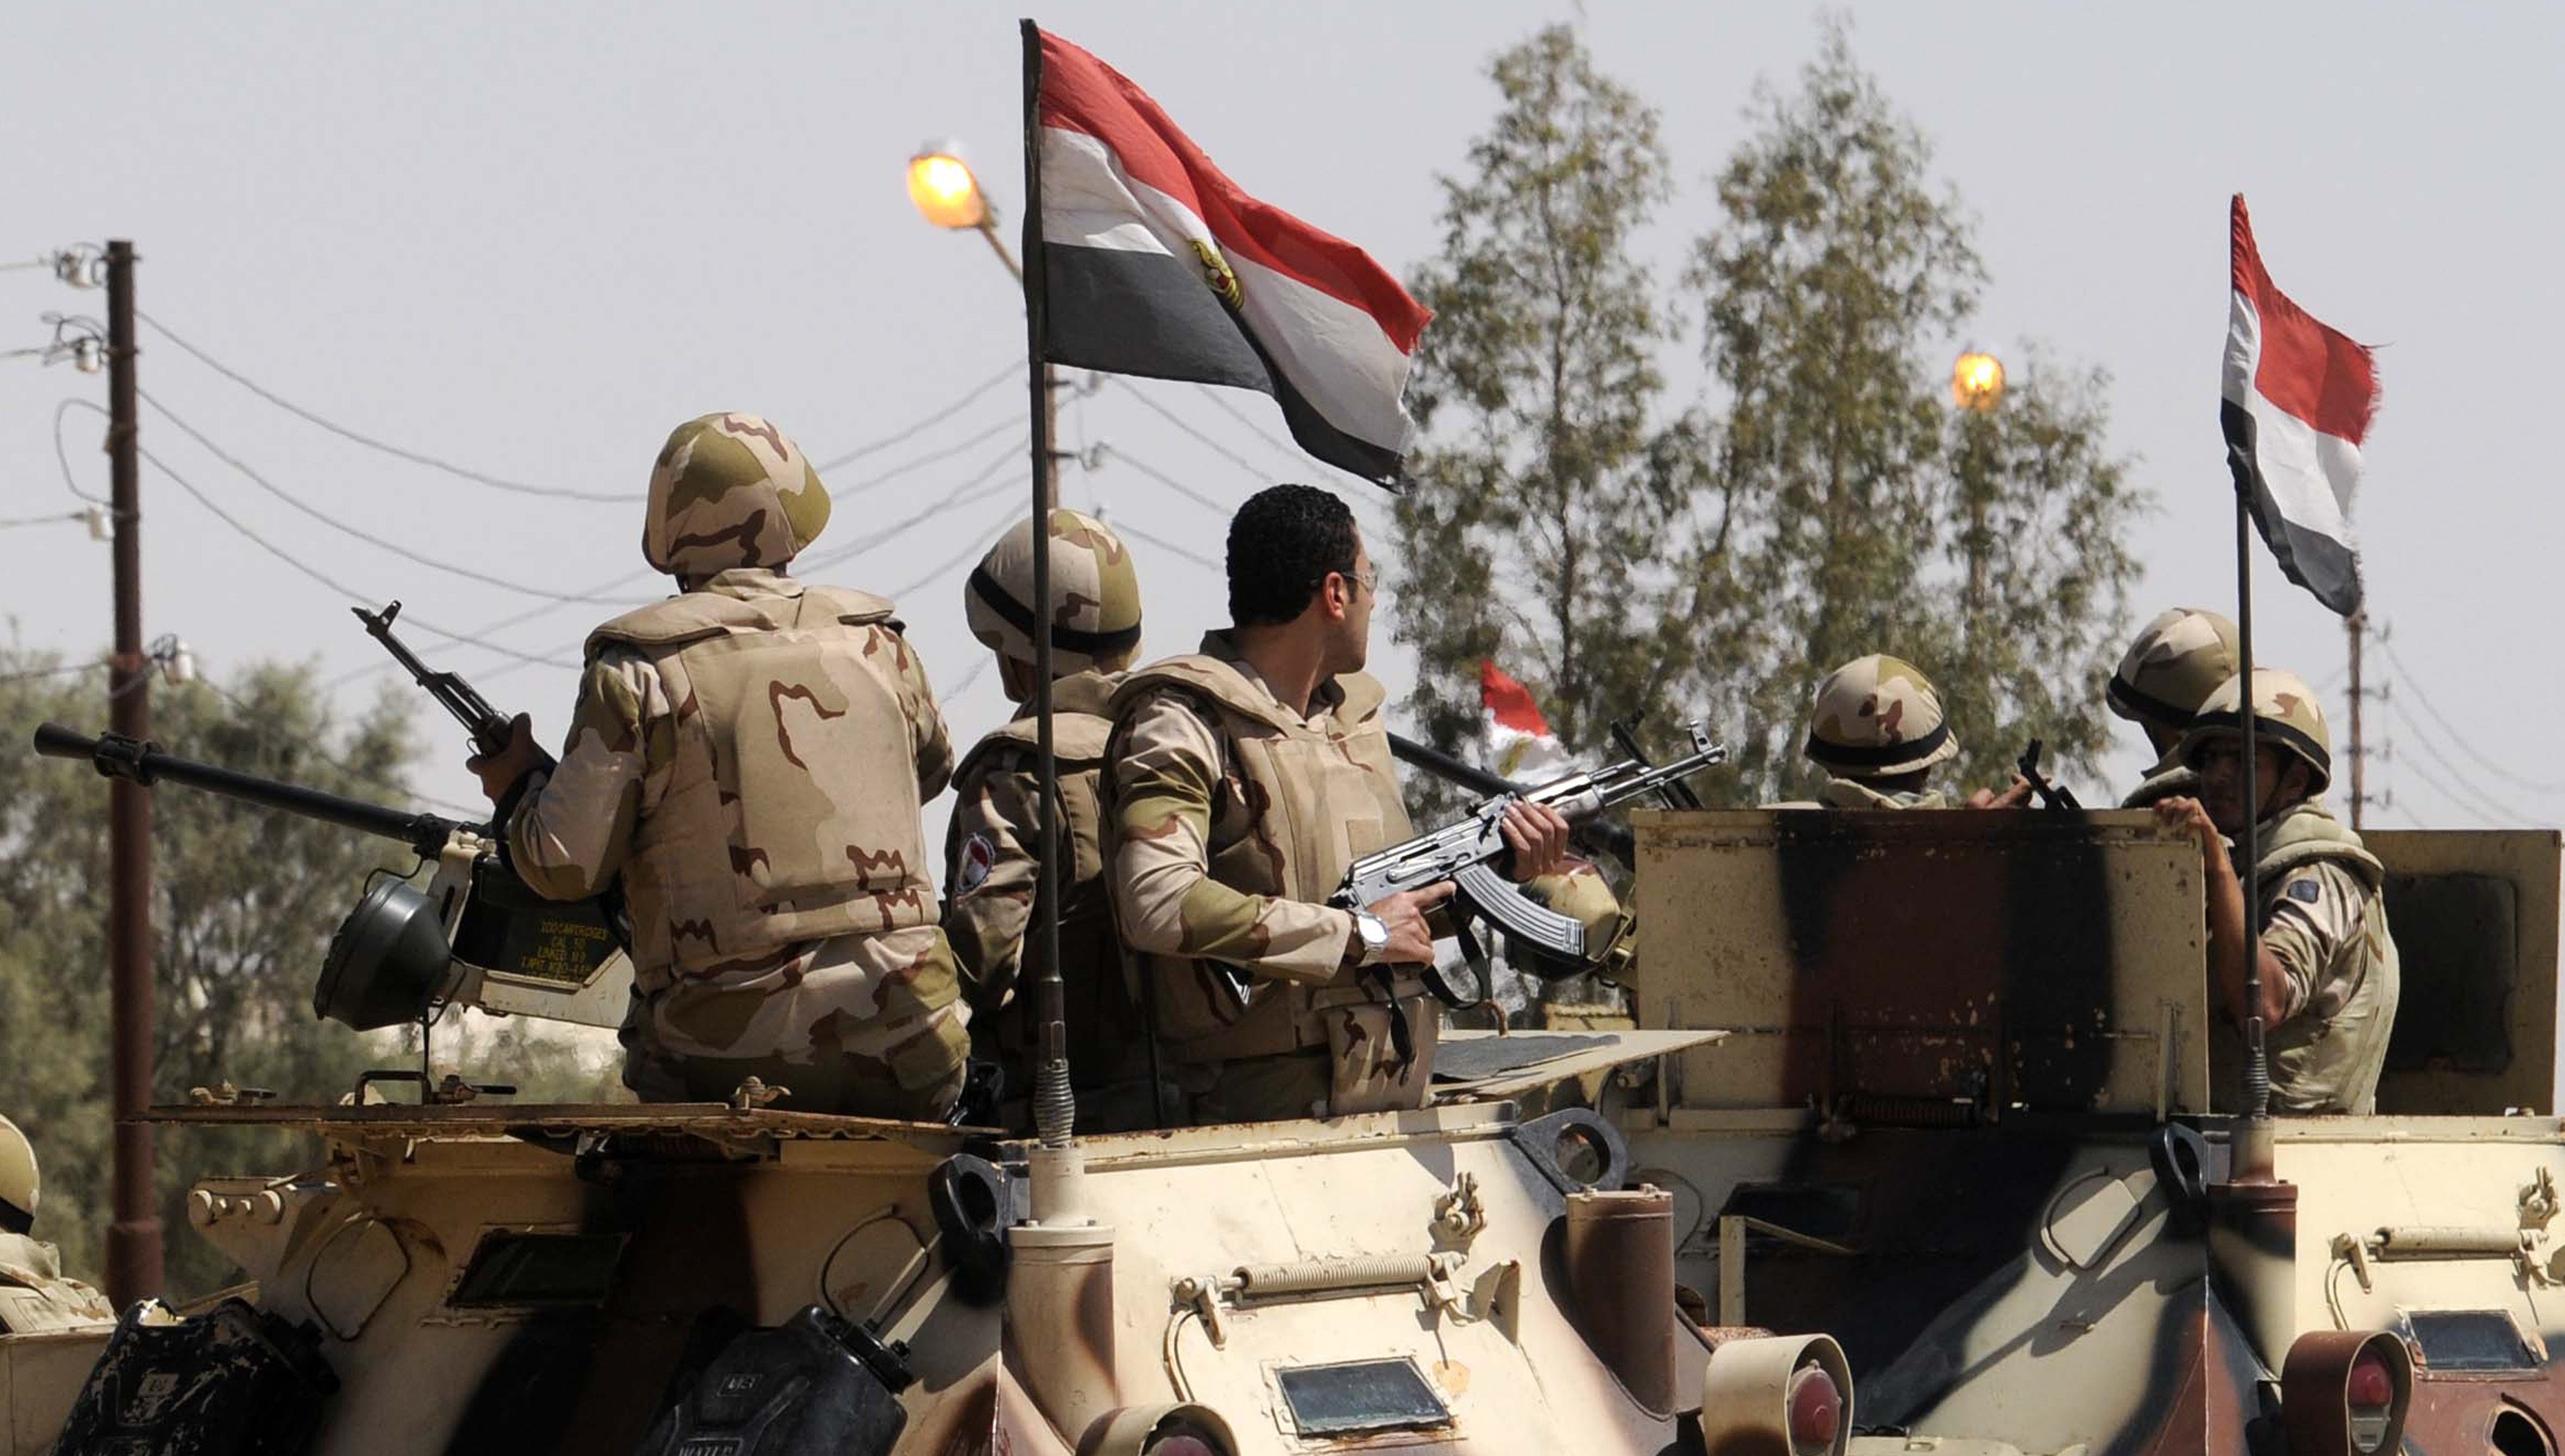 مصادر: مقتل ضابط شرطة وإصابة ضابطين ومجندين في اشتباك مع متشددين بمصر